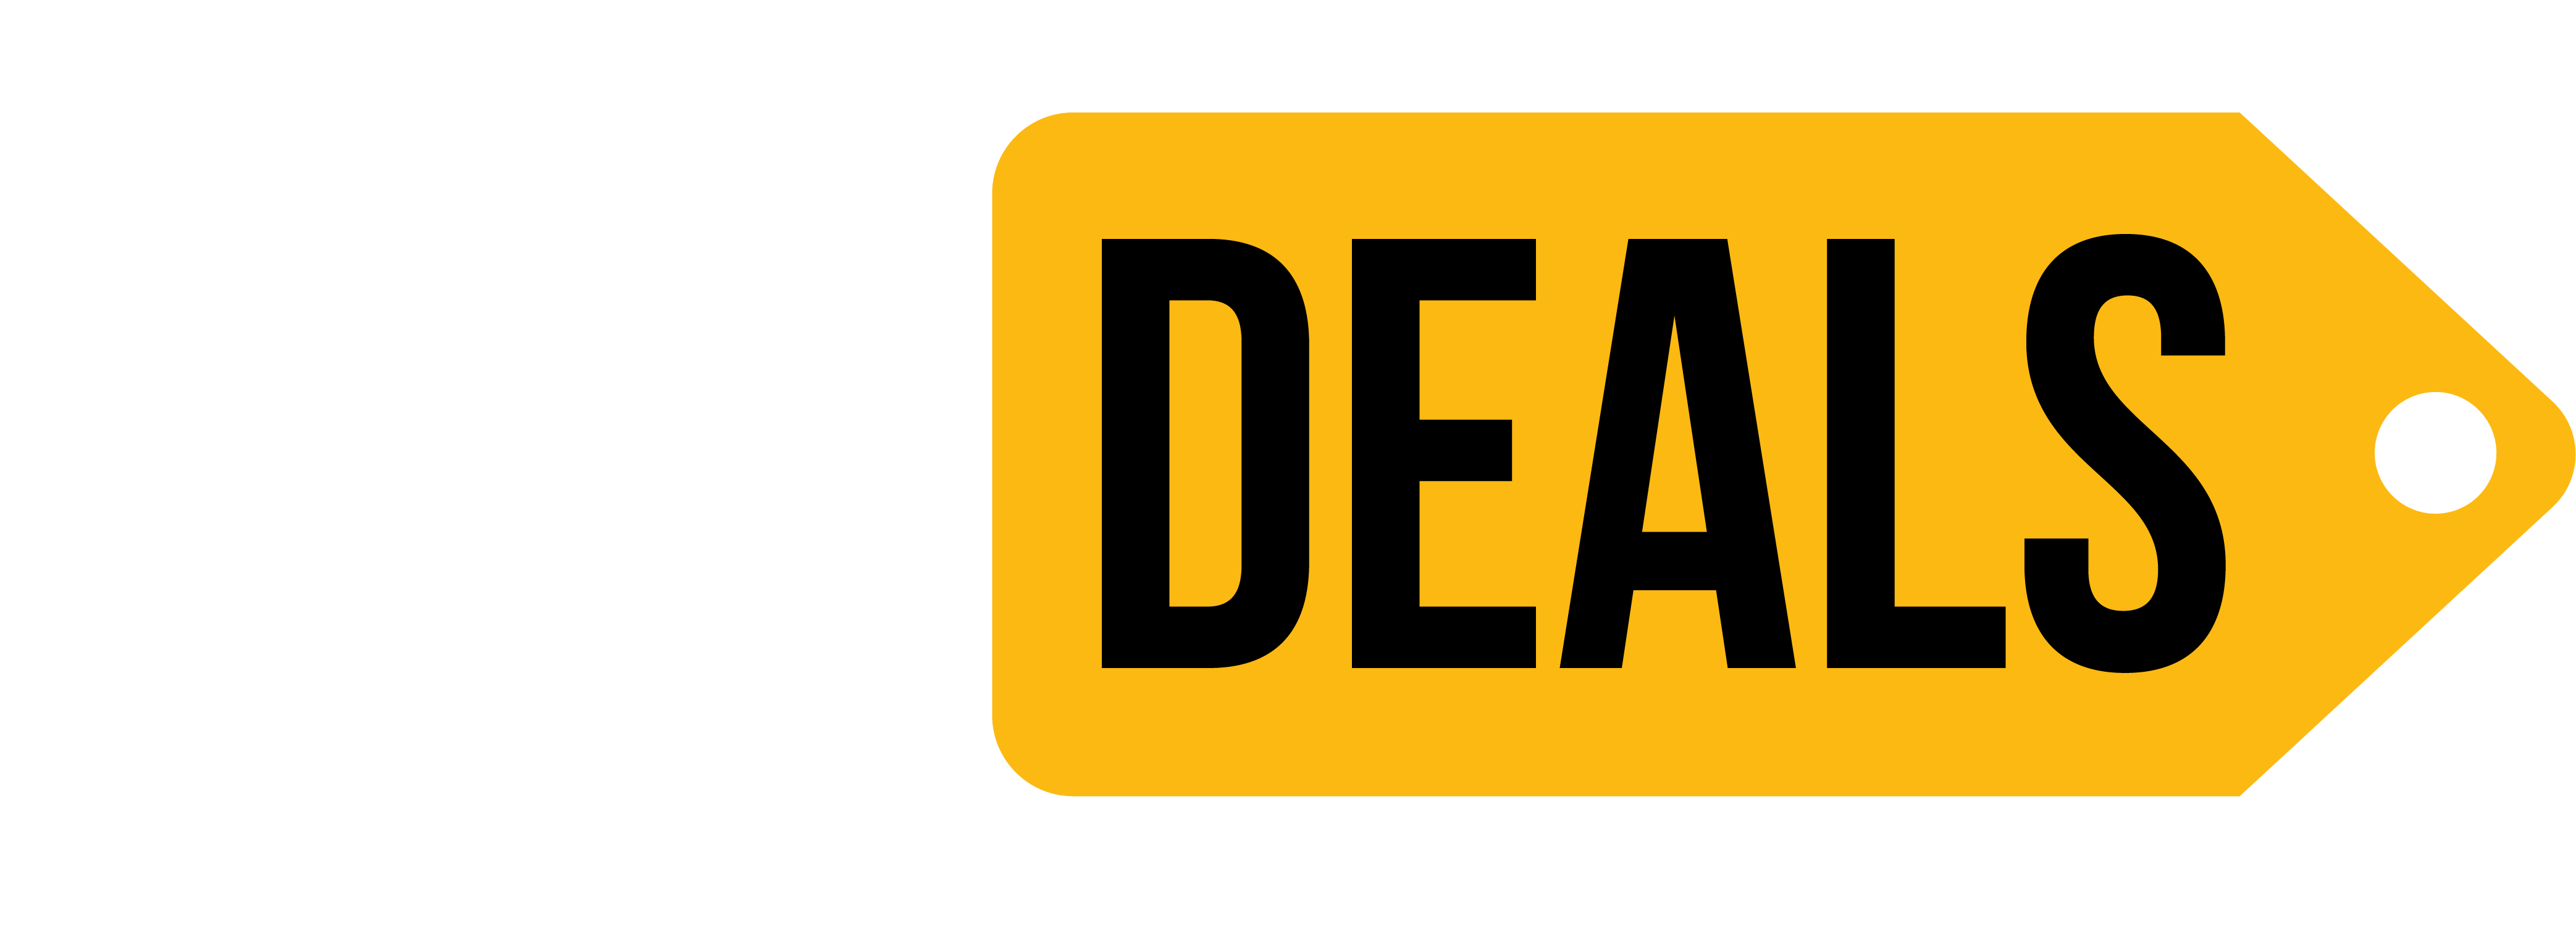 616 Deals